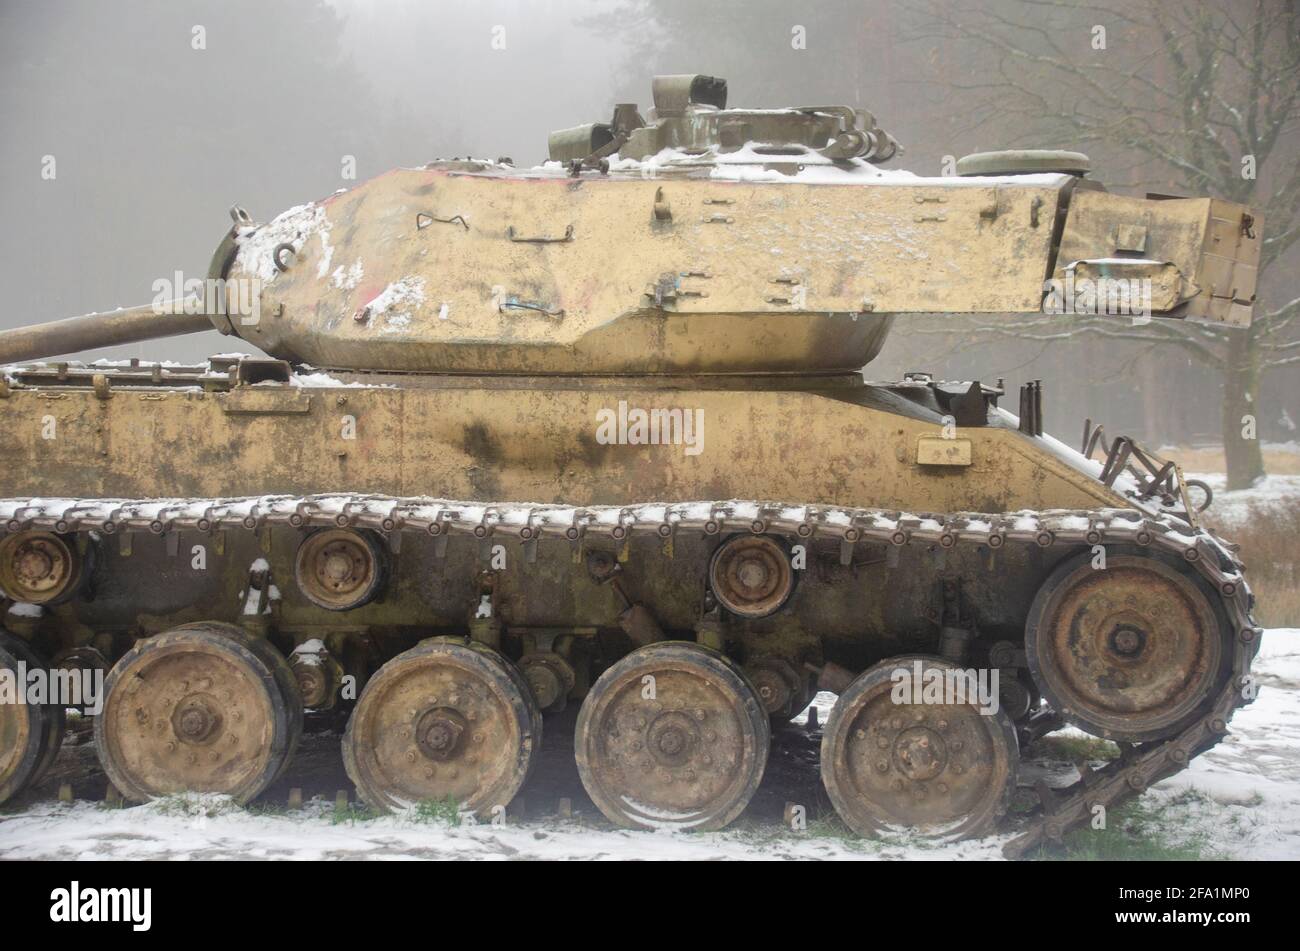 Alte Panzer in einer Landschaft mit Schnee Stock Photo